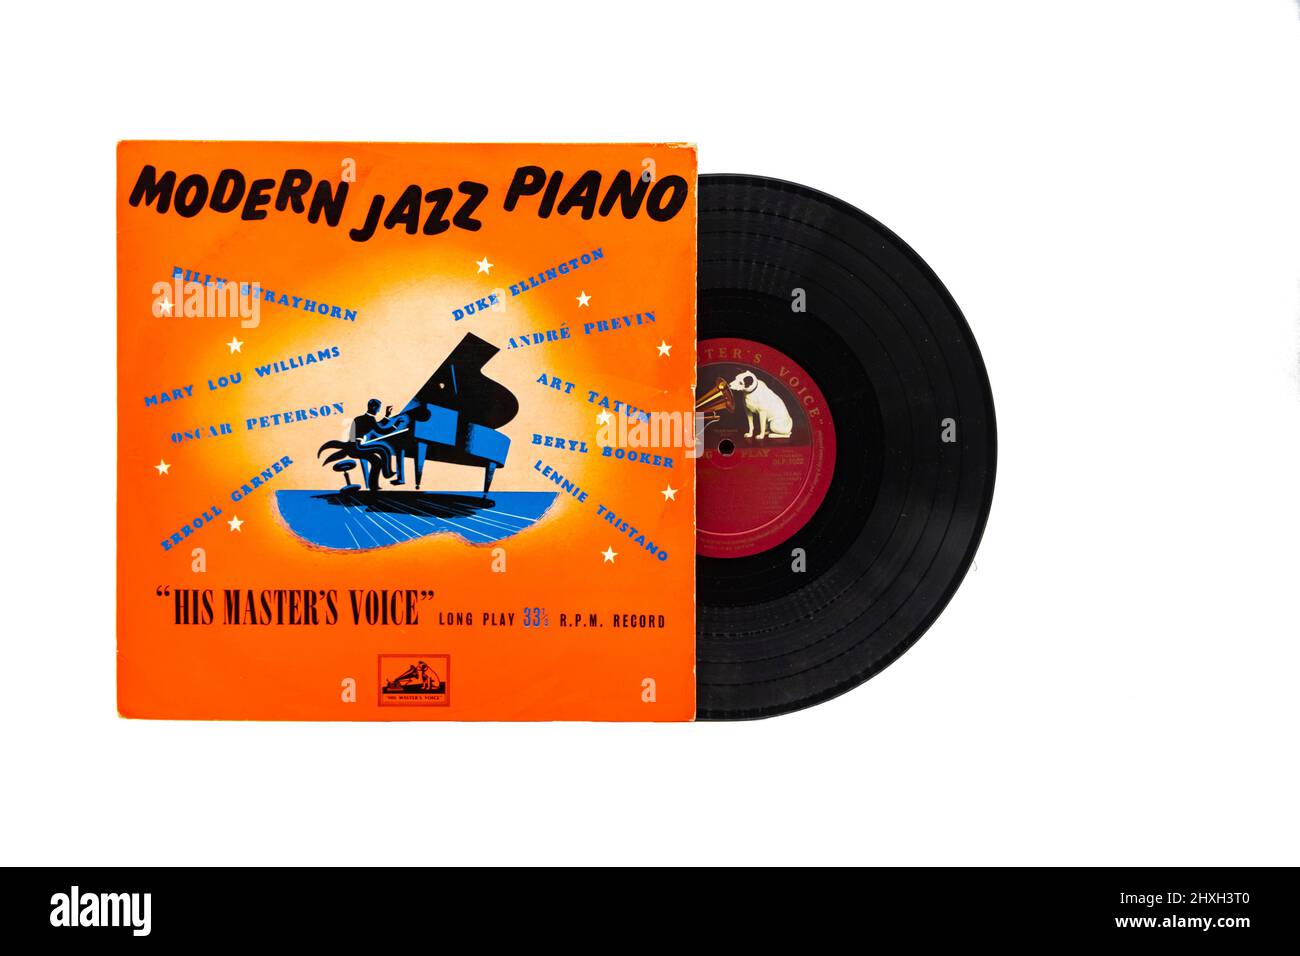 Modern Jazz Piano vinilo LP cover en HMV o su sello de voz de los maestros  Fotografía de stock - Alamy